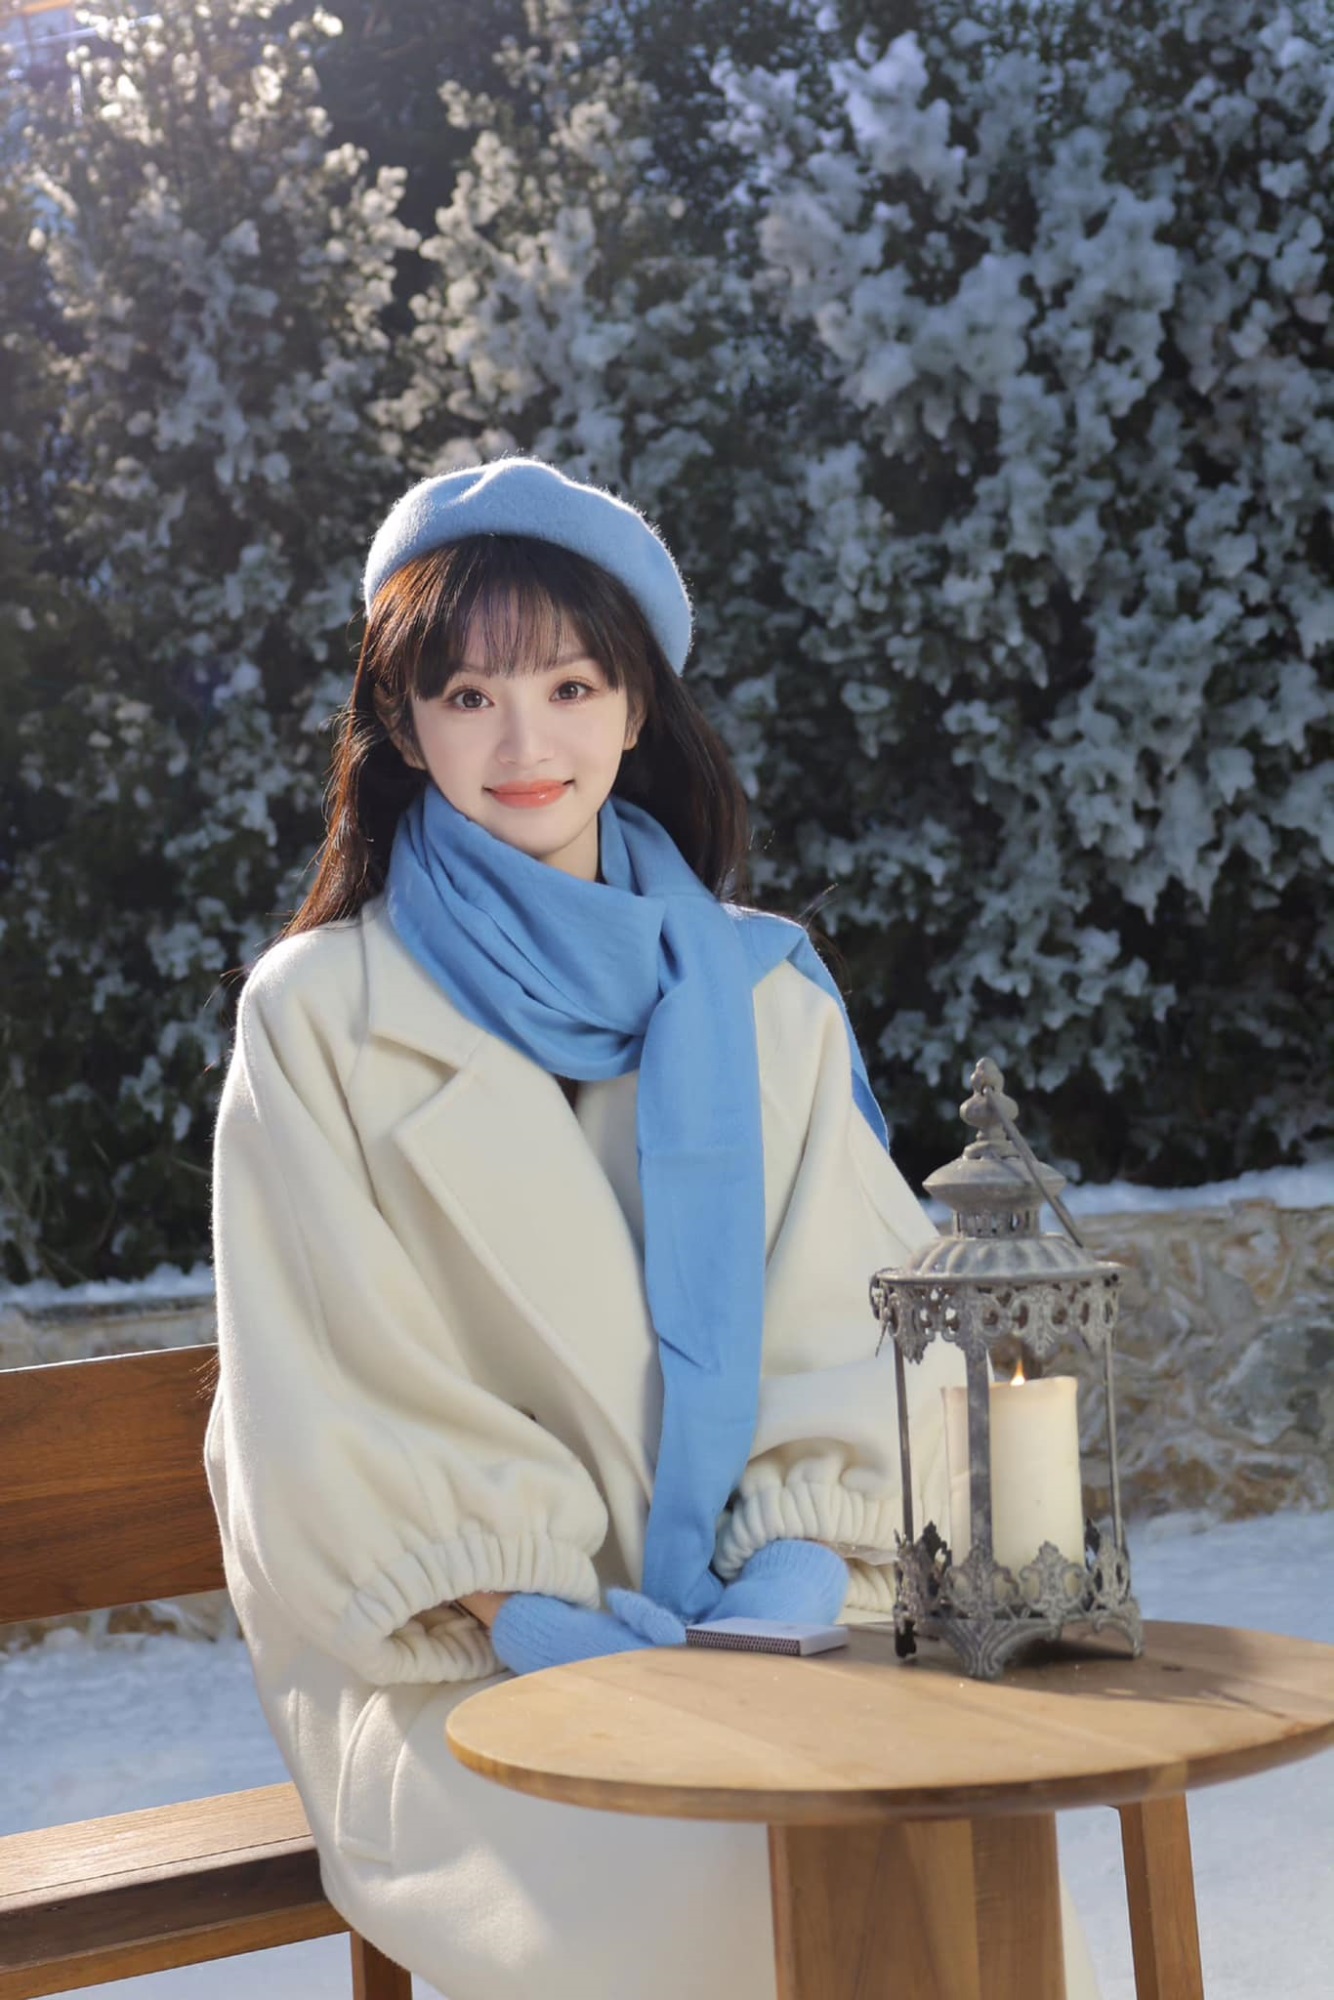 Điền Hi Vi hóa 'cô bé mùa đông' trong bộ ảnh mới, nhan sắc được netizen hết lời khen ngợi  - Ảnh 1